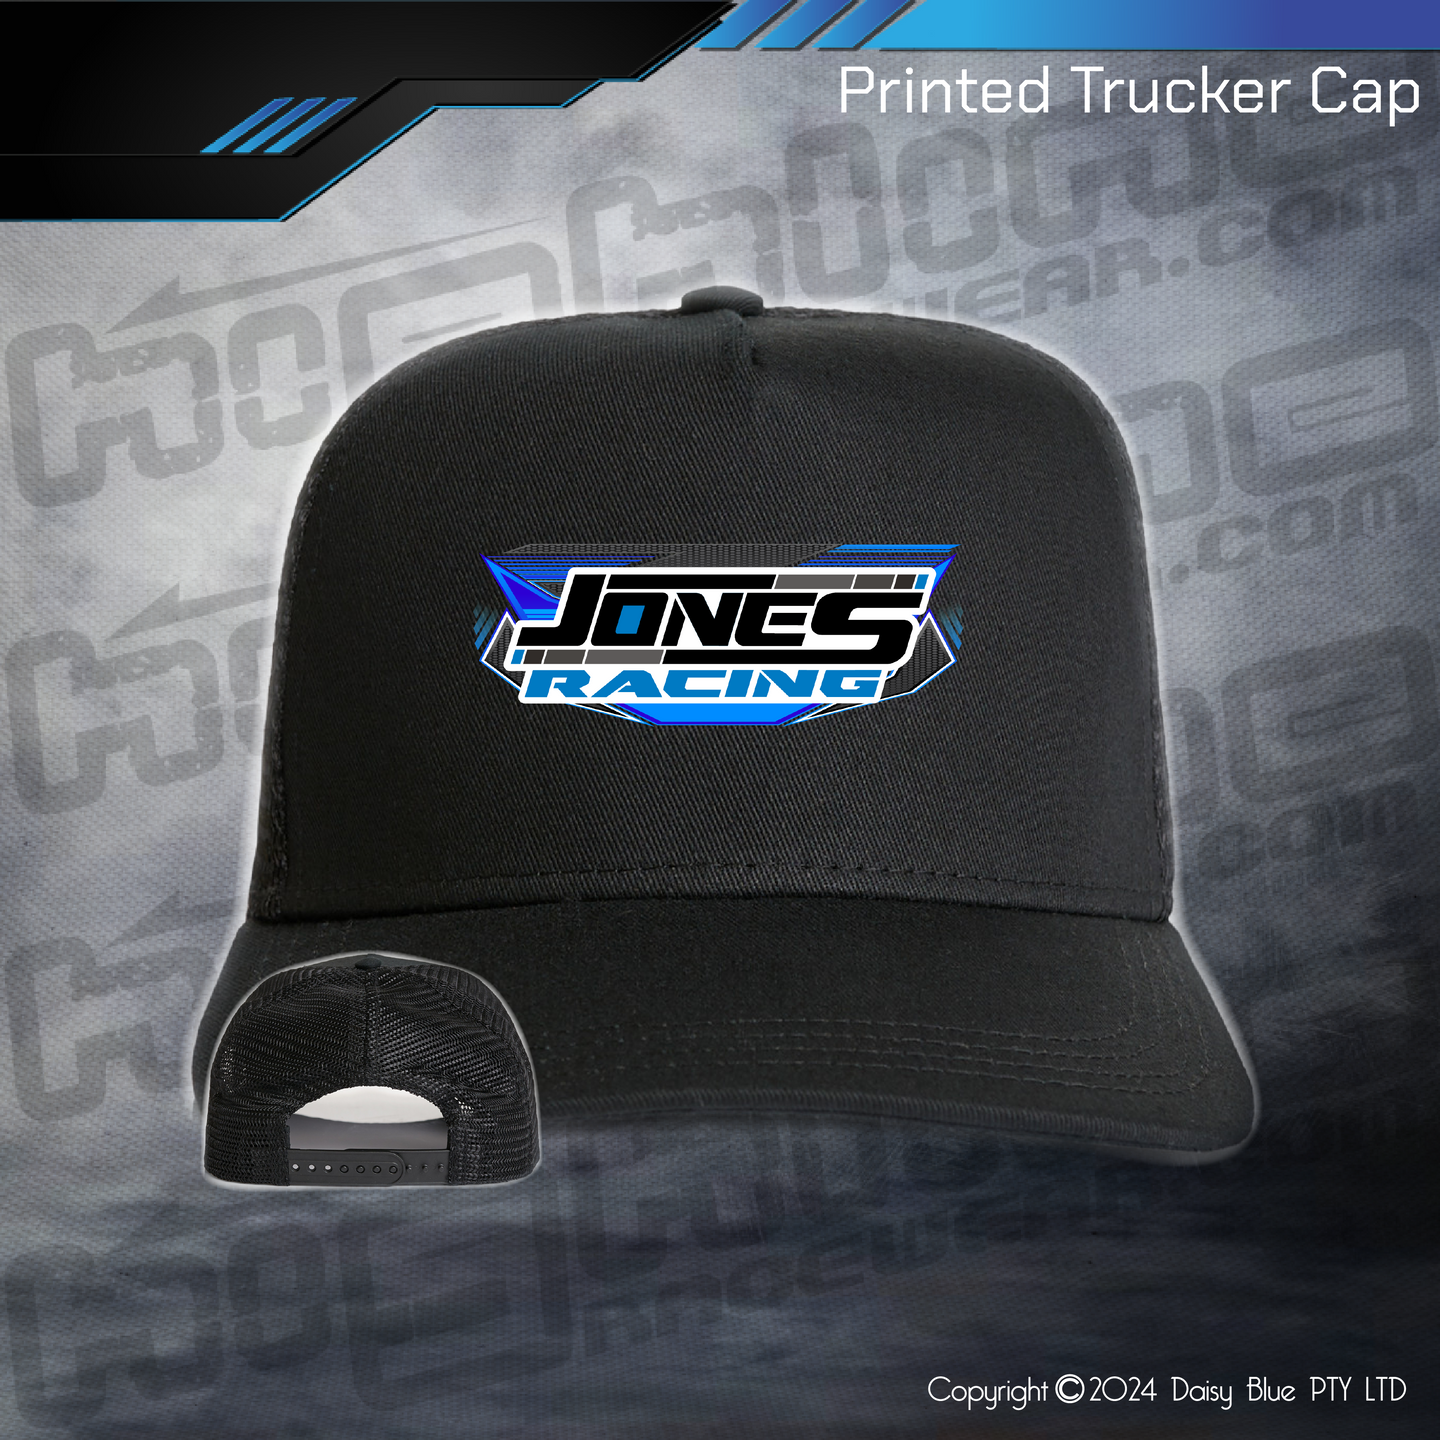 Printed Trucker Cap - Jones Racing